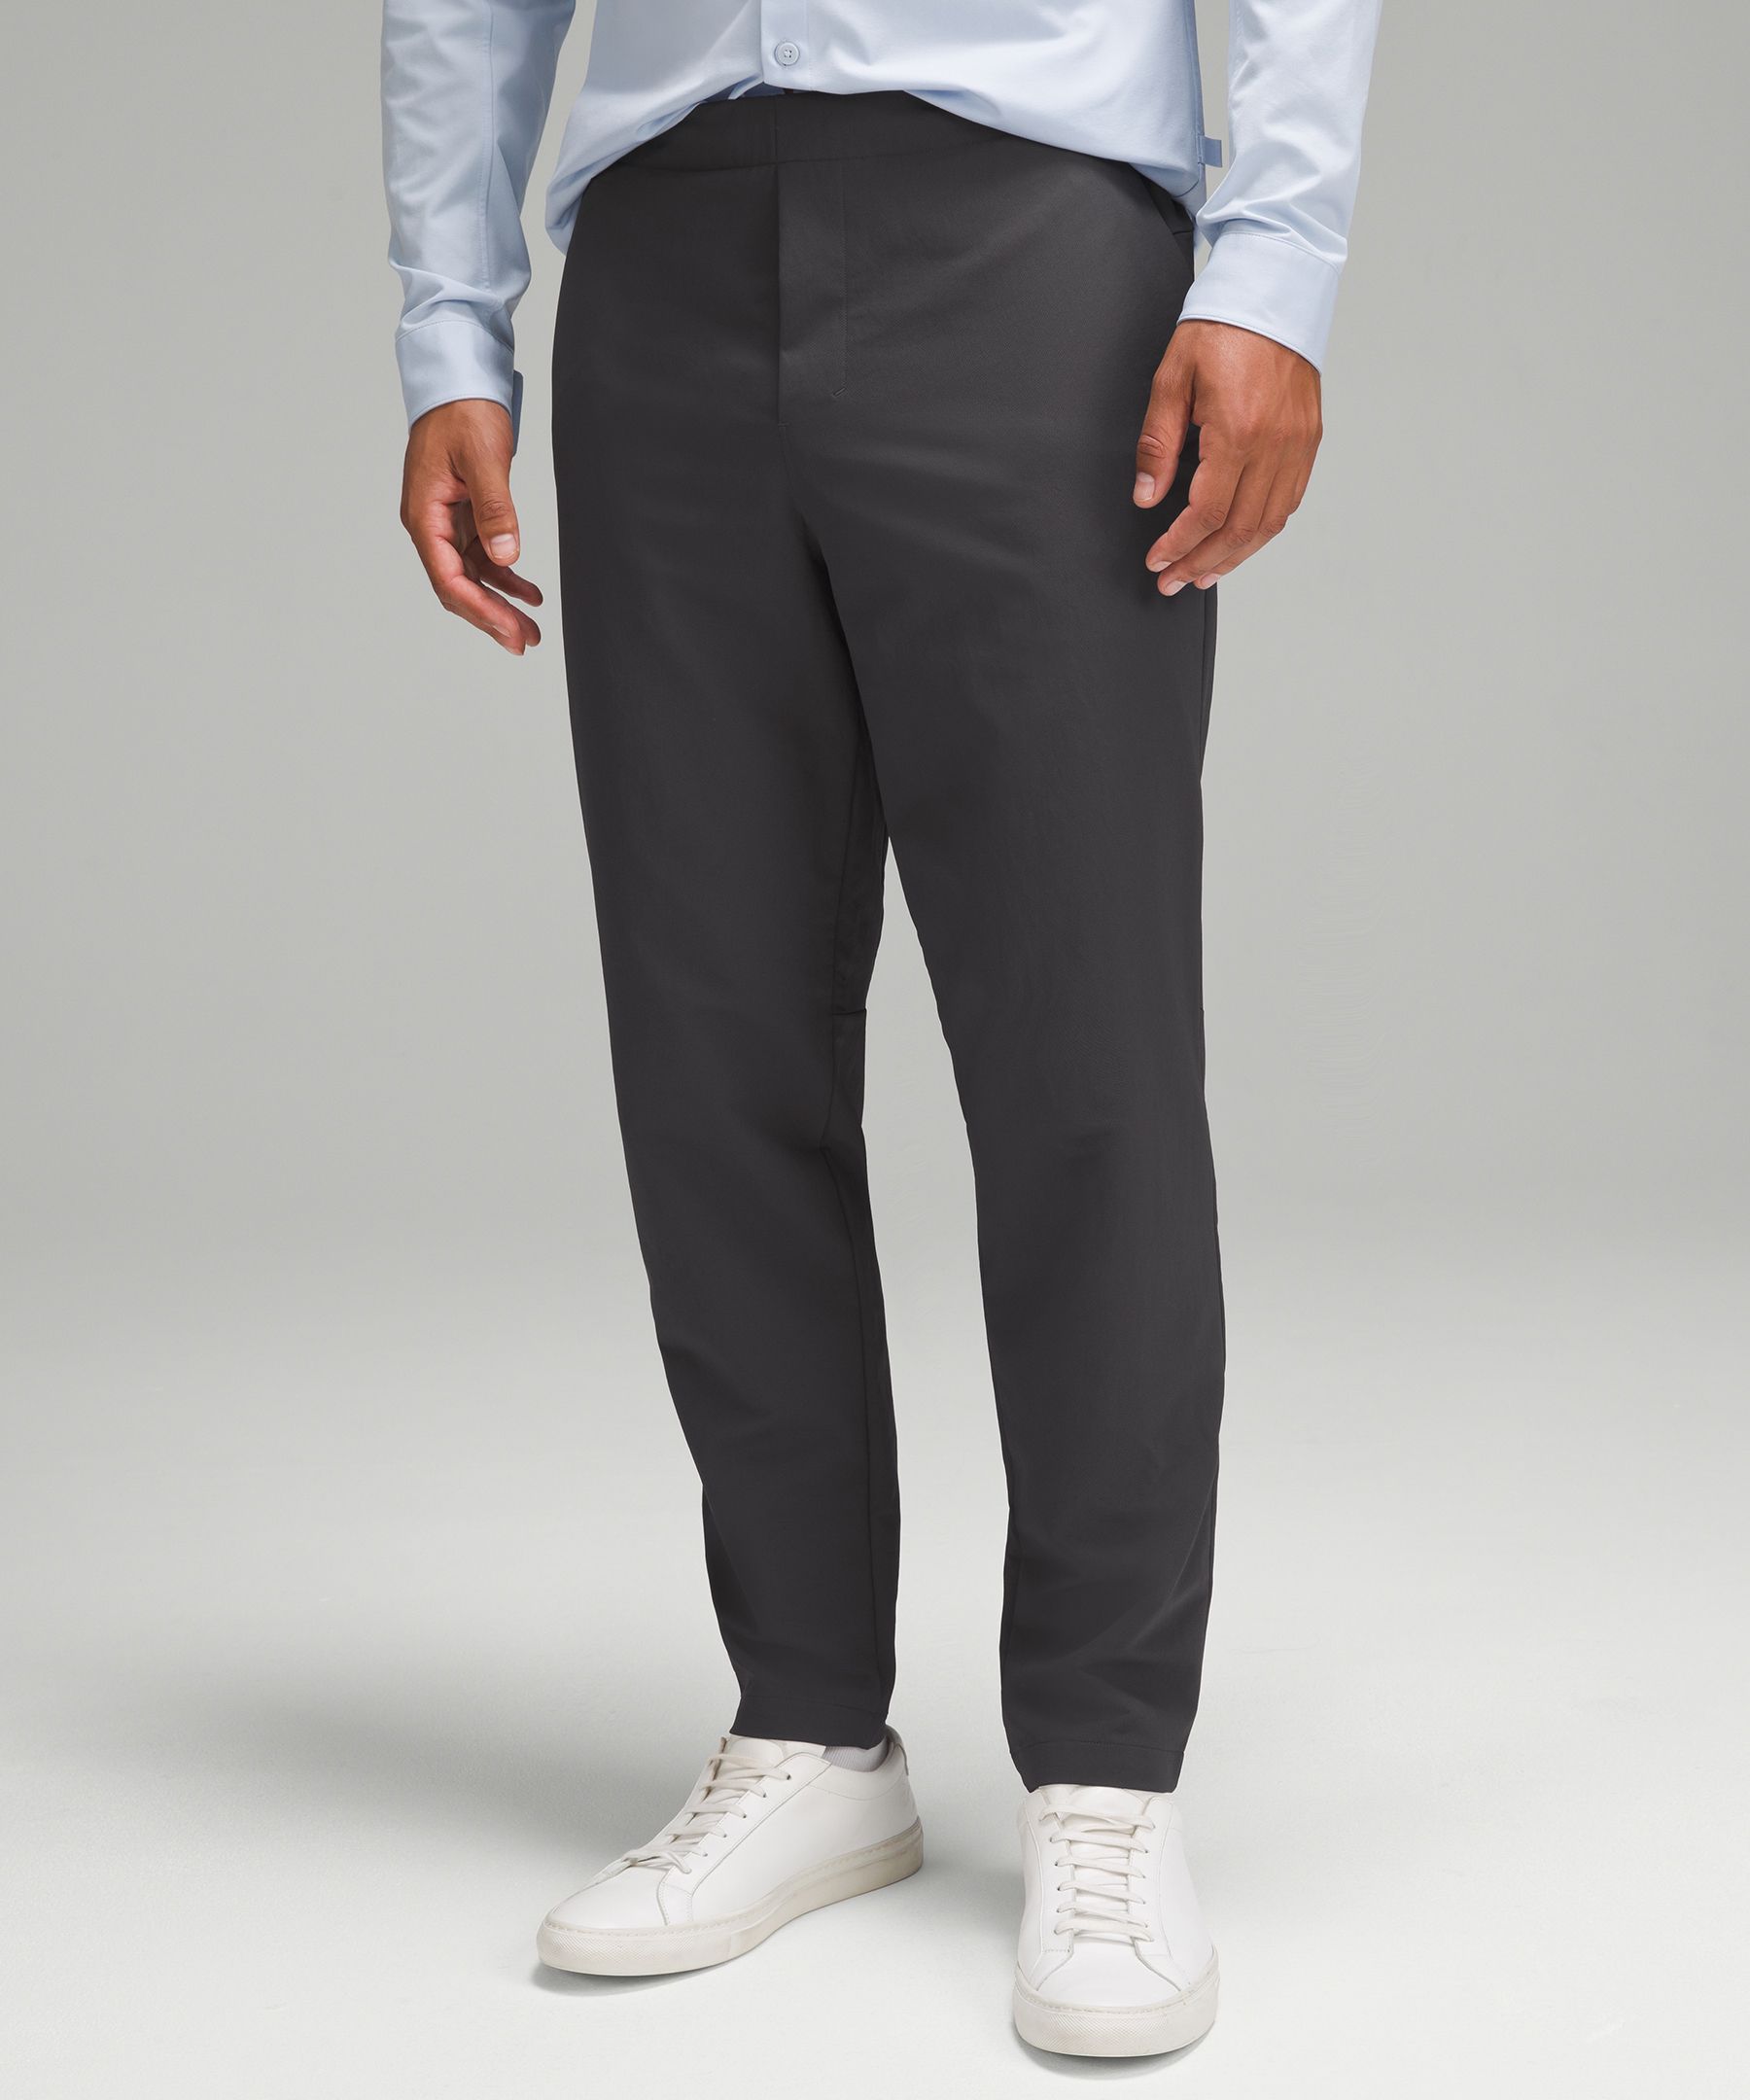 Pants & Jumpsuits, Navy Lululemon City Trek Trouser